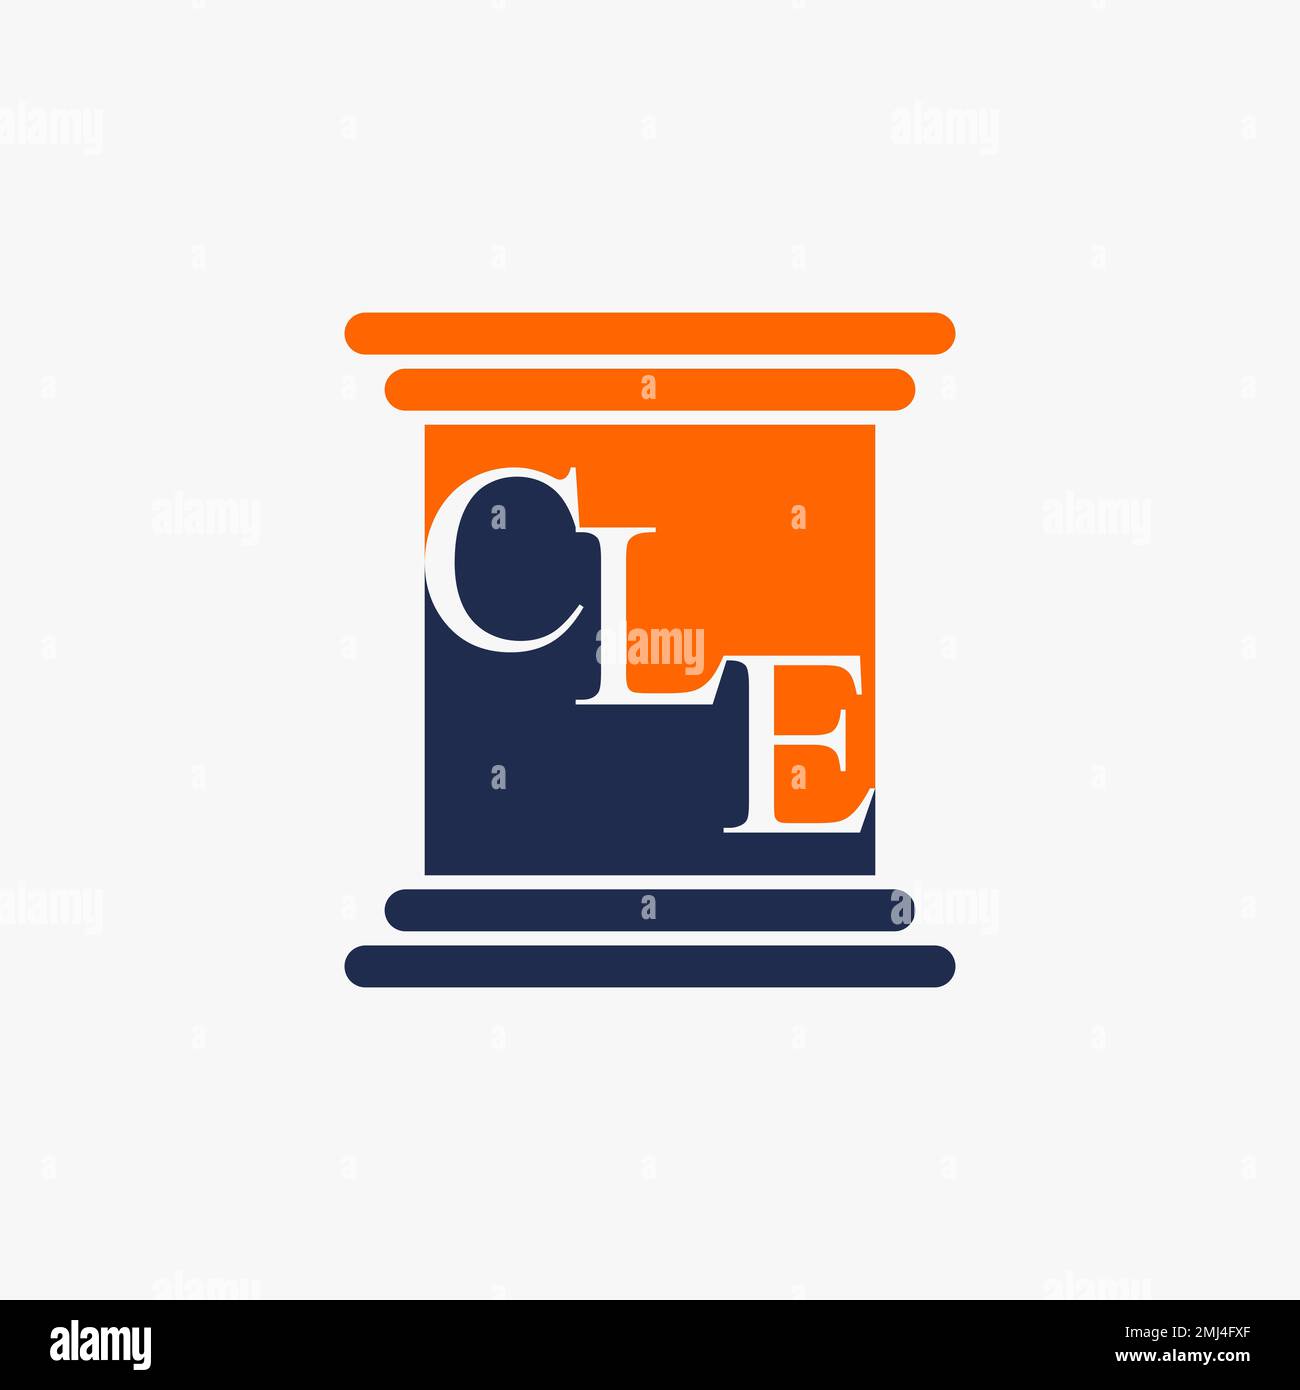 Police unique de lettre ou mot CLE serif de haut en bas sur le support de bâtiment ou pilier graphique logo design abstrait concept vecteur loi de la bourse éducation Illustration de Vecteur